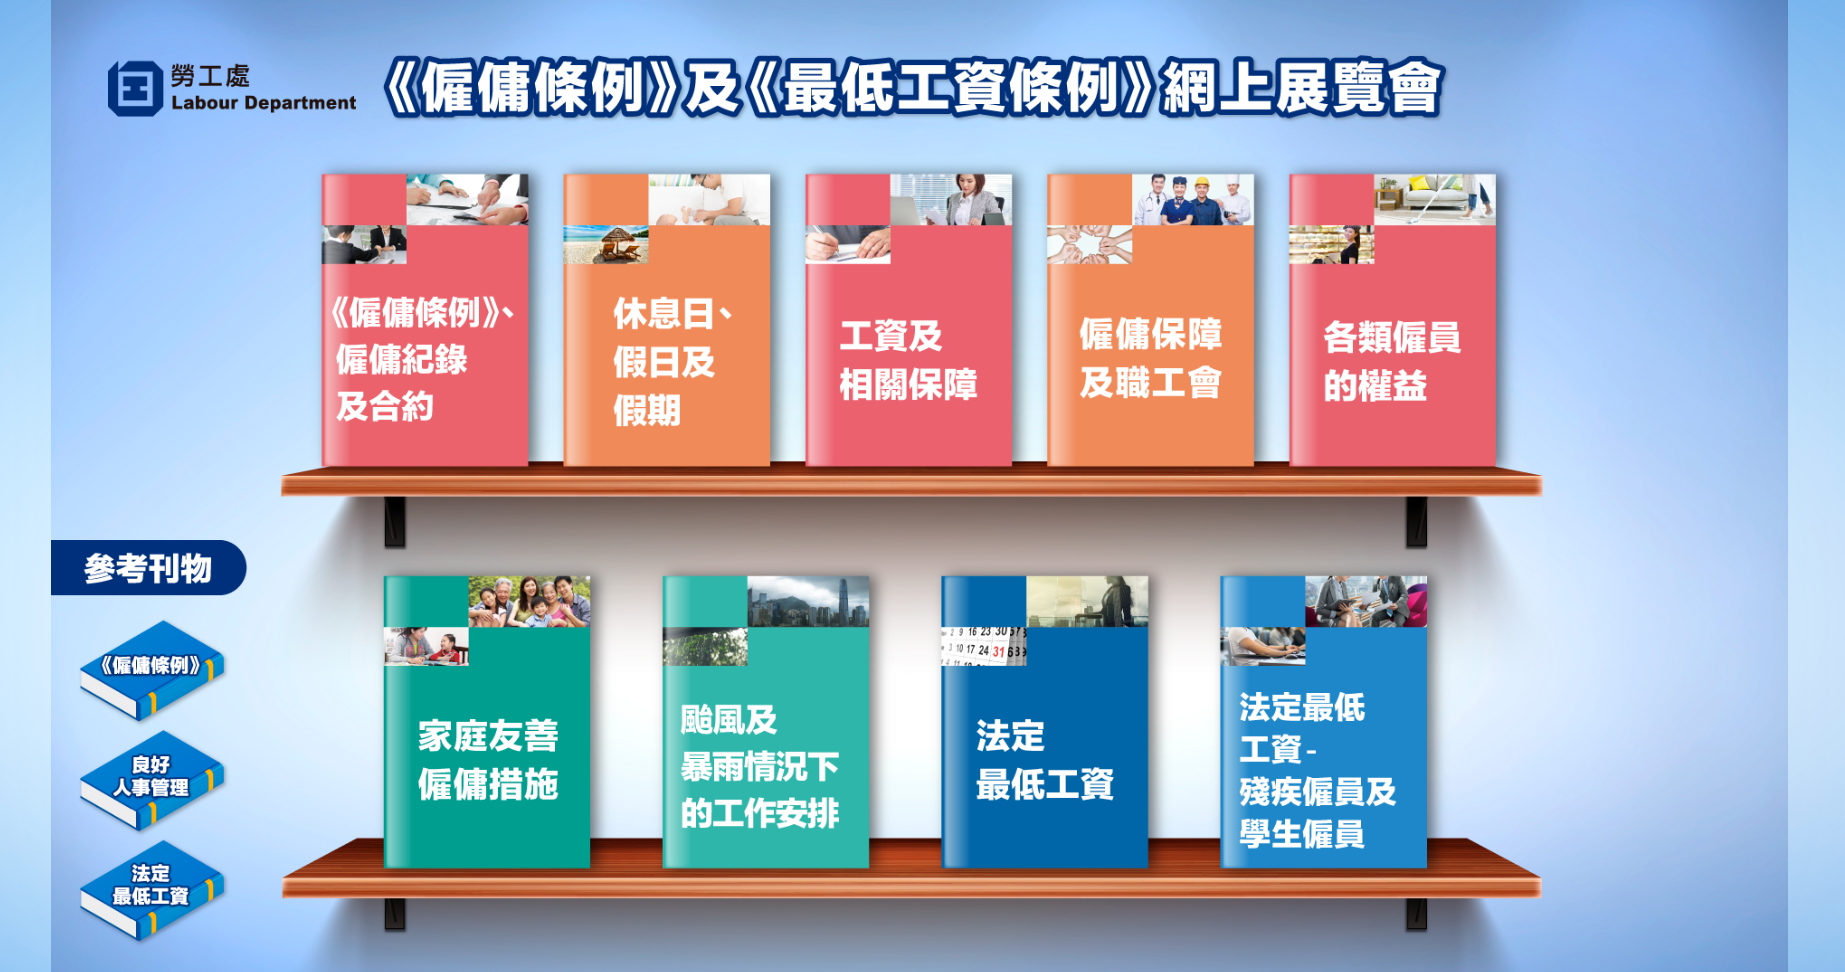 [사진] 홍콩, 「고용 조례」 및 「최저임금 조례」 온라인 전람회 개최 안내 (홍콩 노동처 제공)